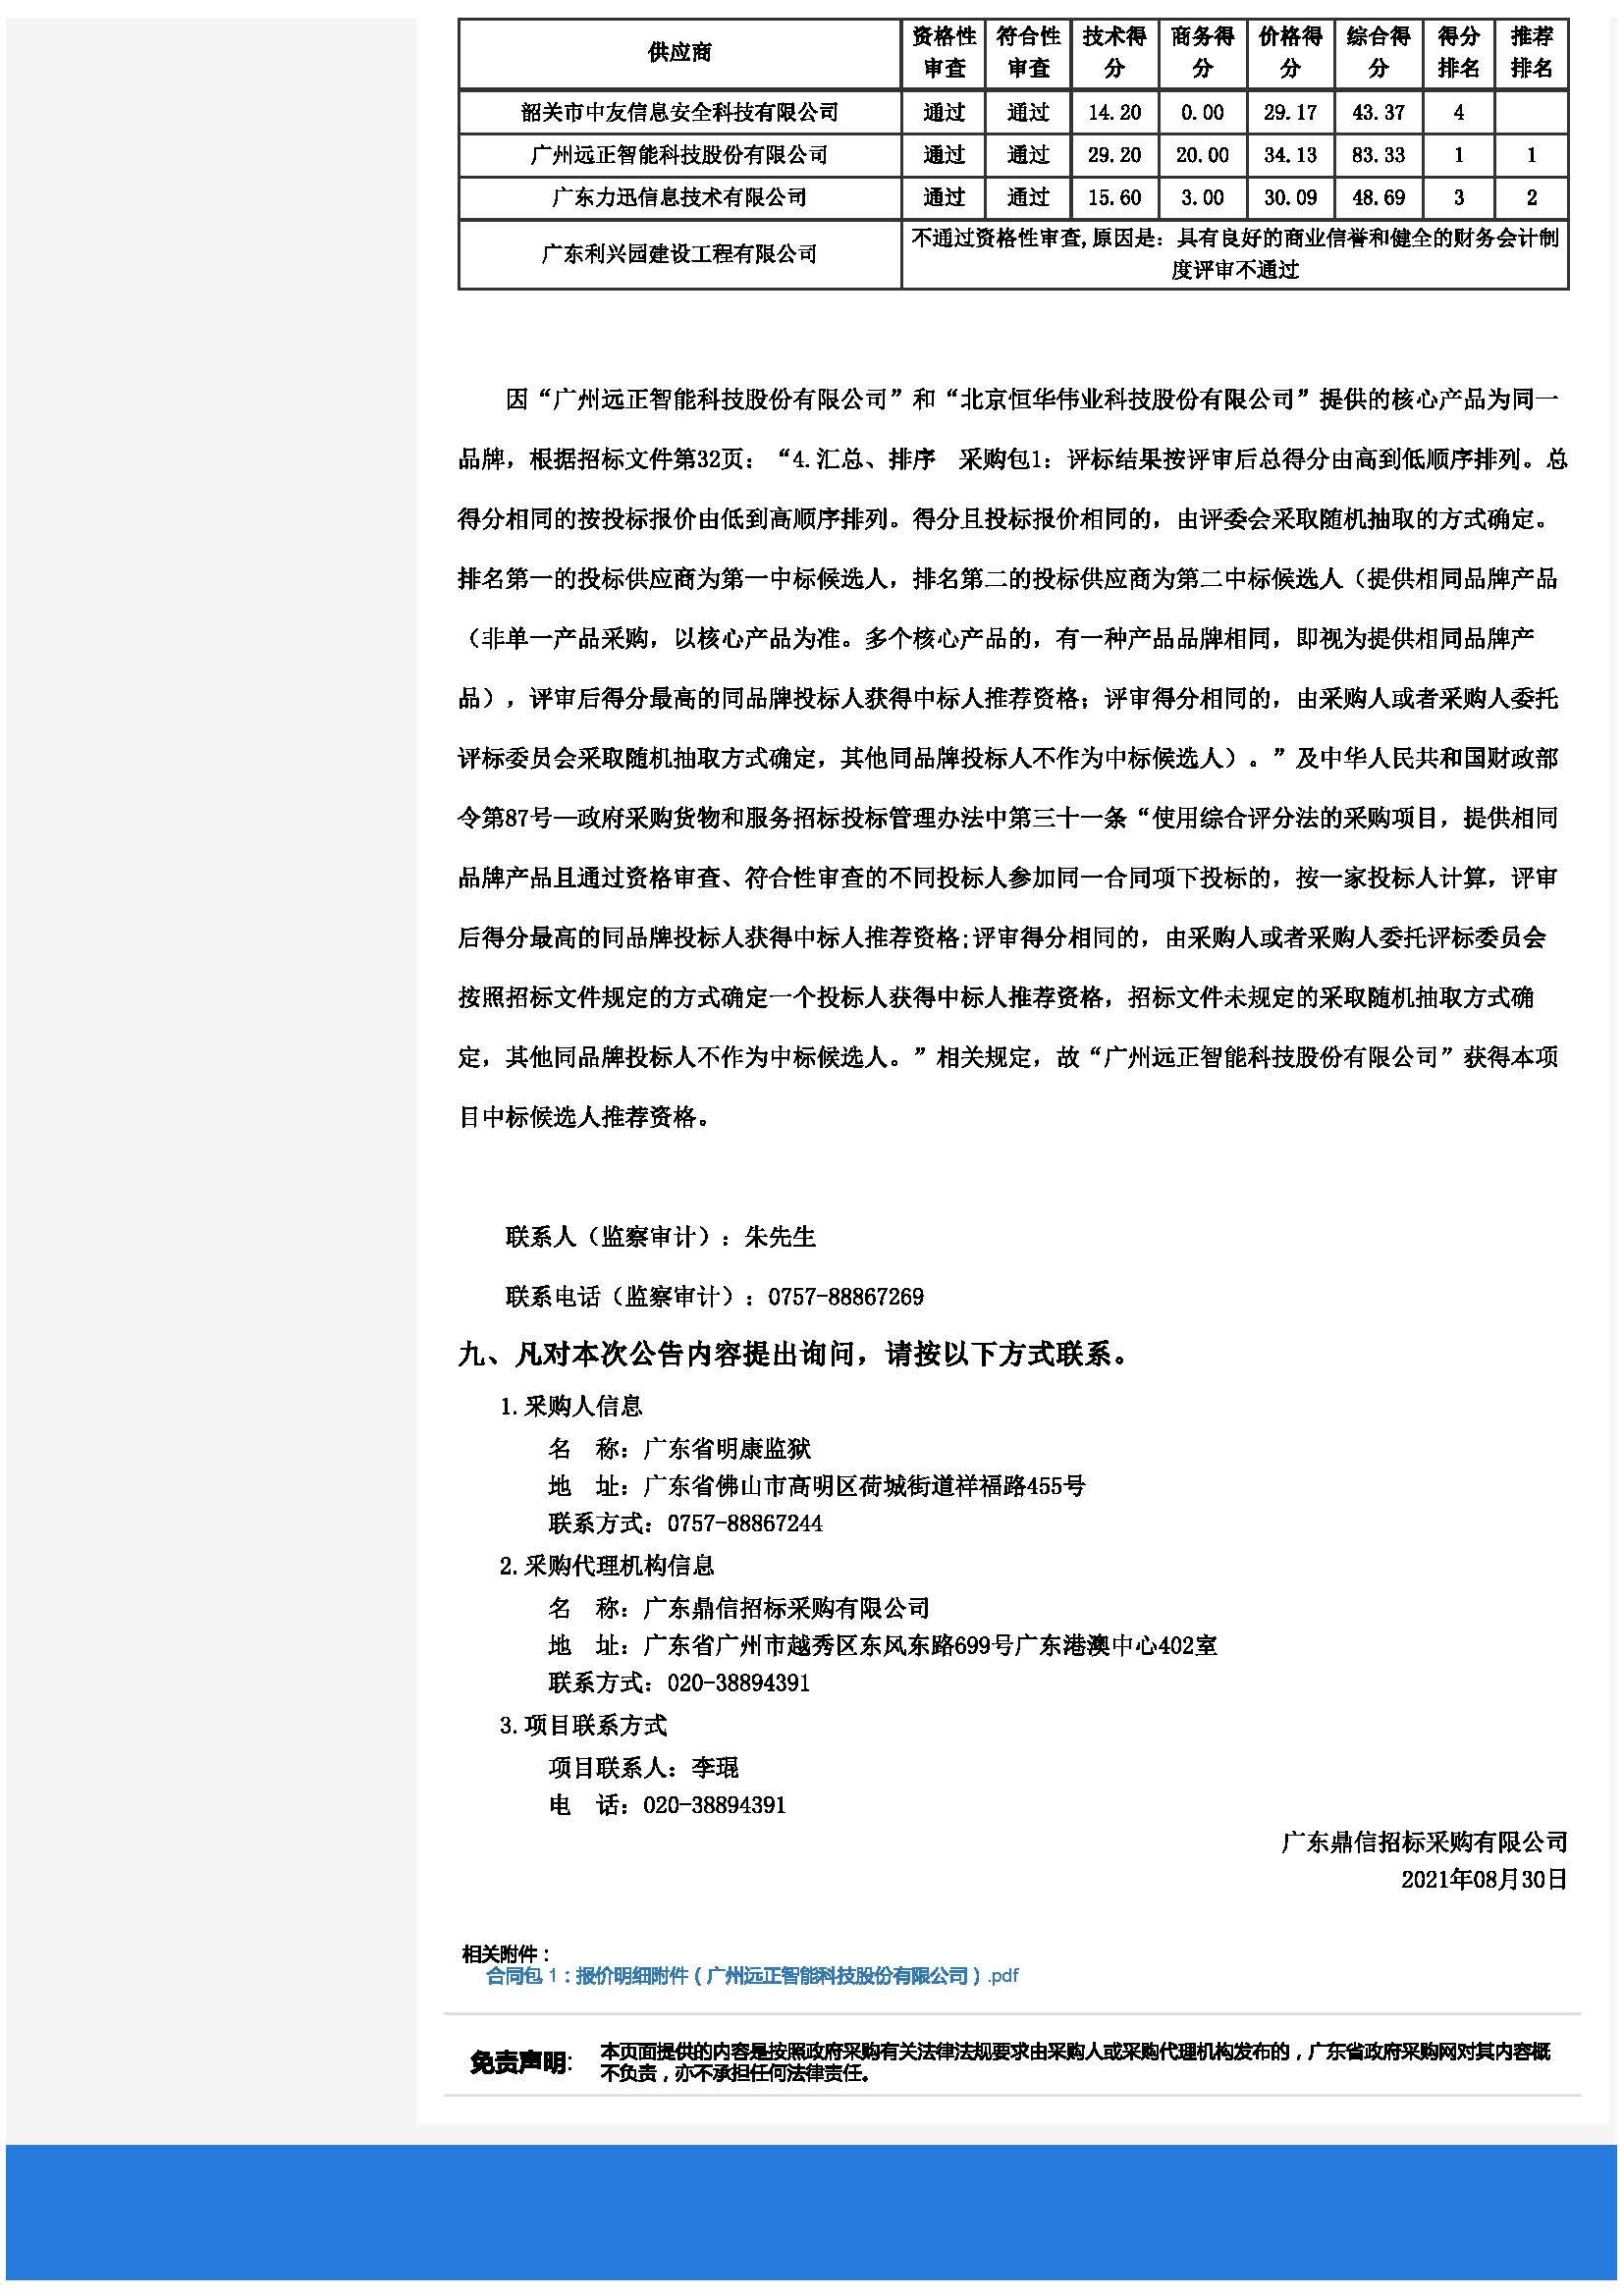 广东省明康监狱节约型机关创建节能改造项目（二次）中标公告_页面_15.jpg